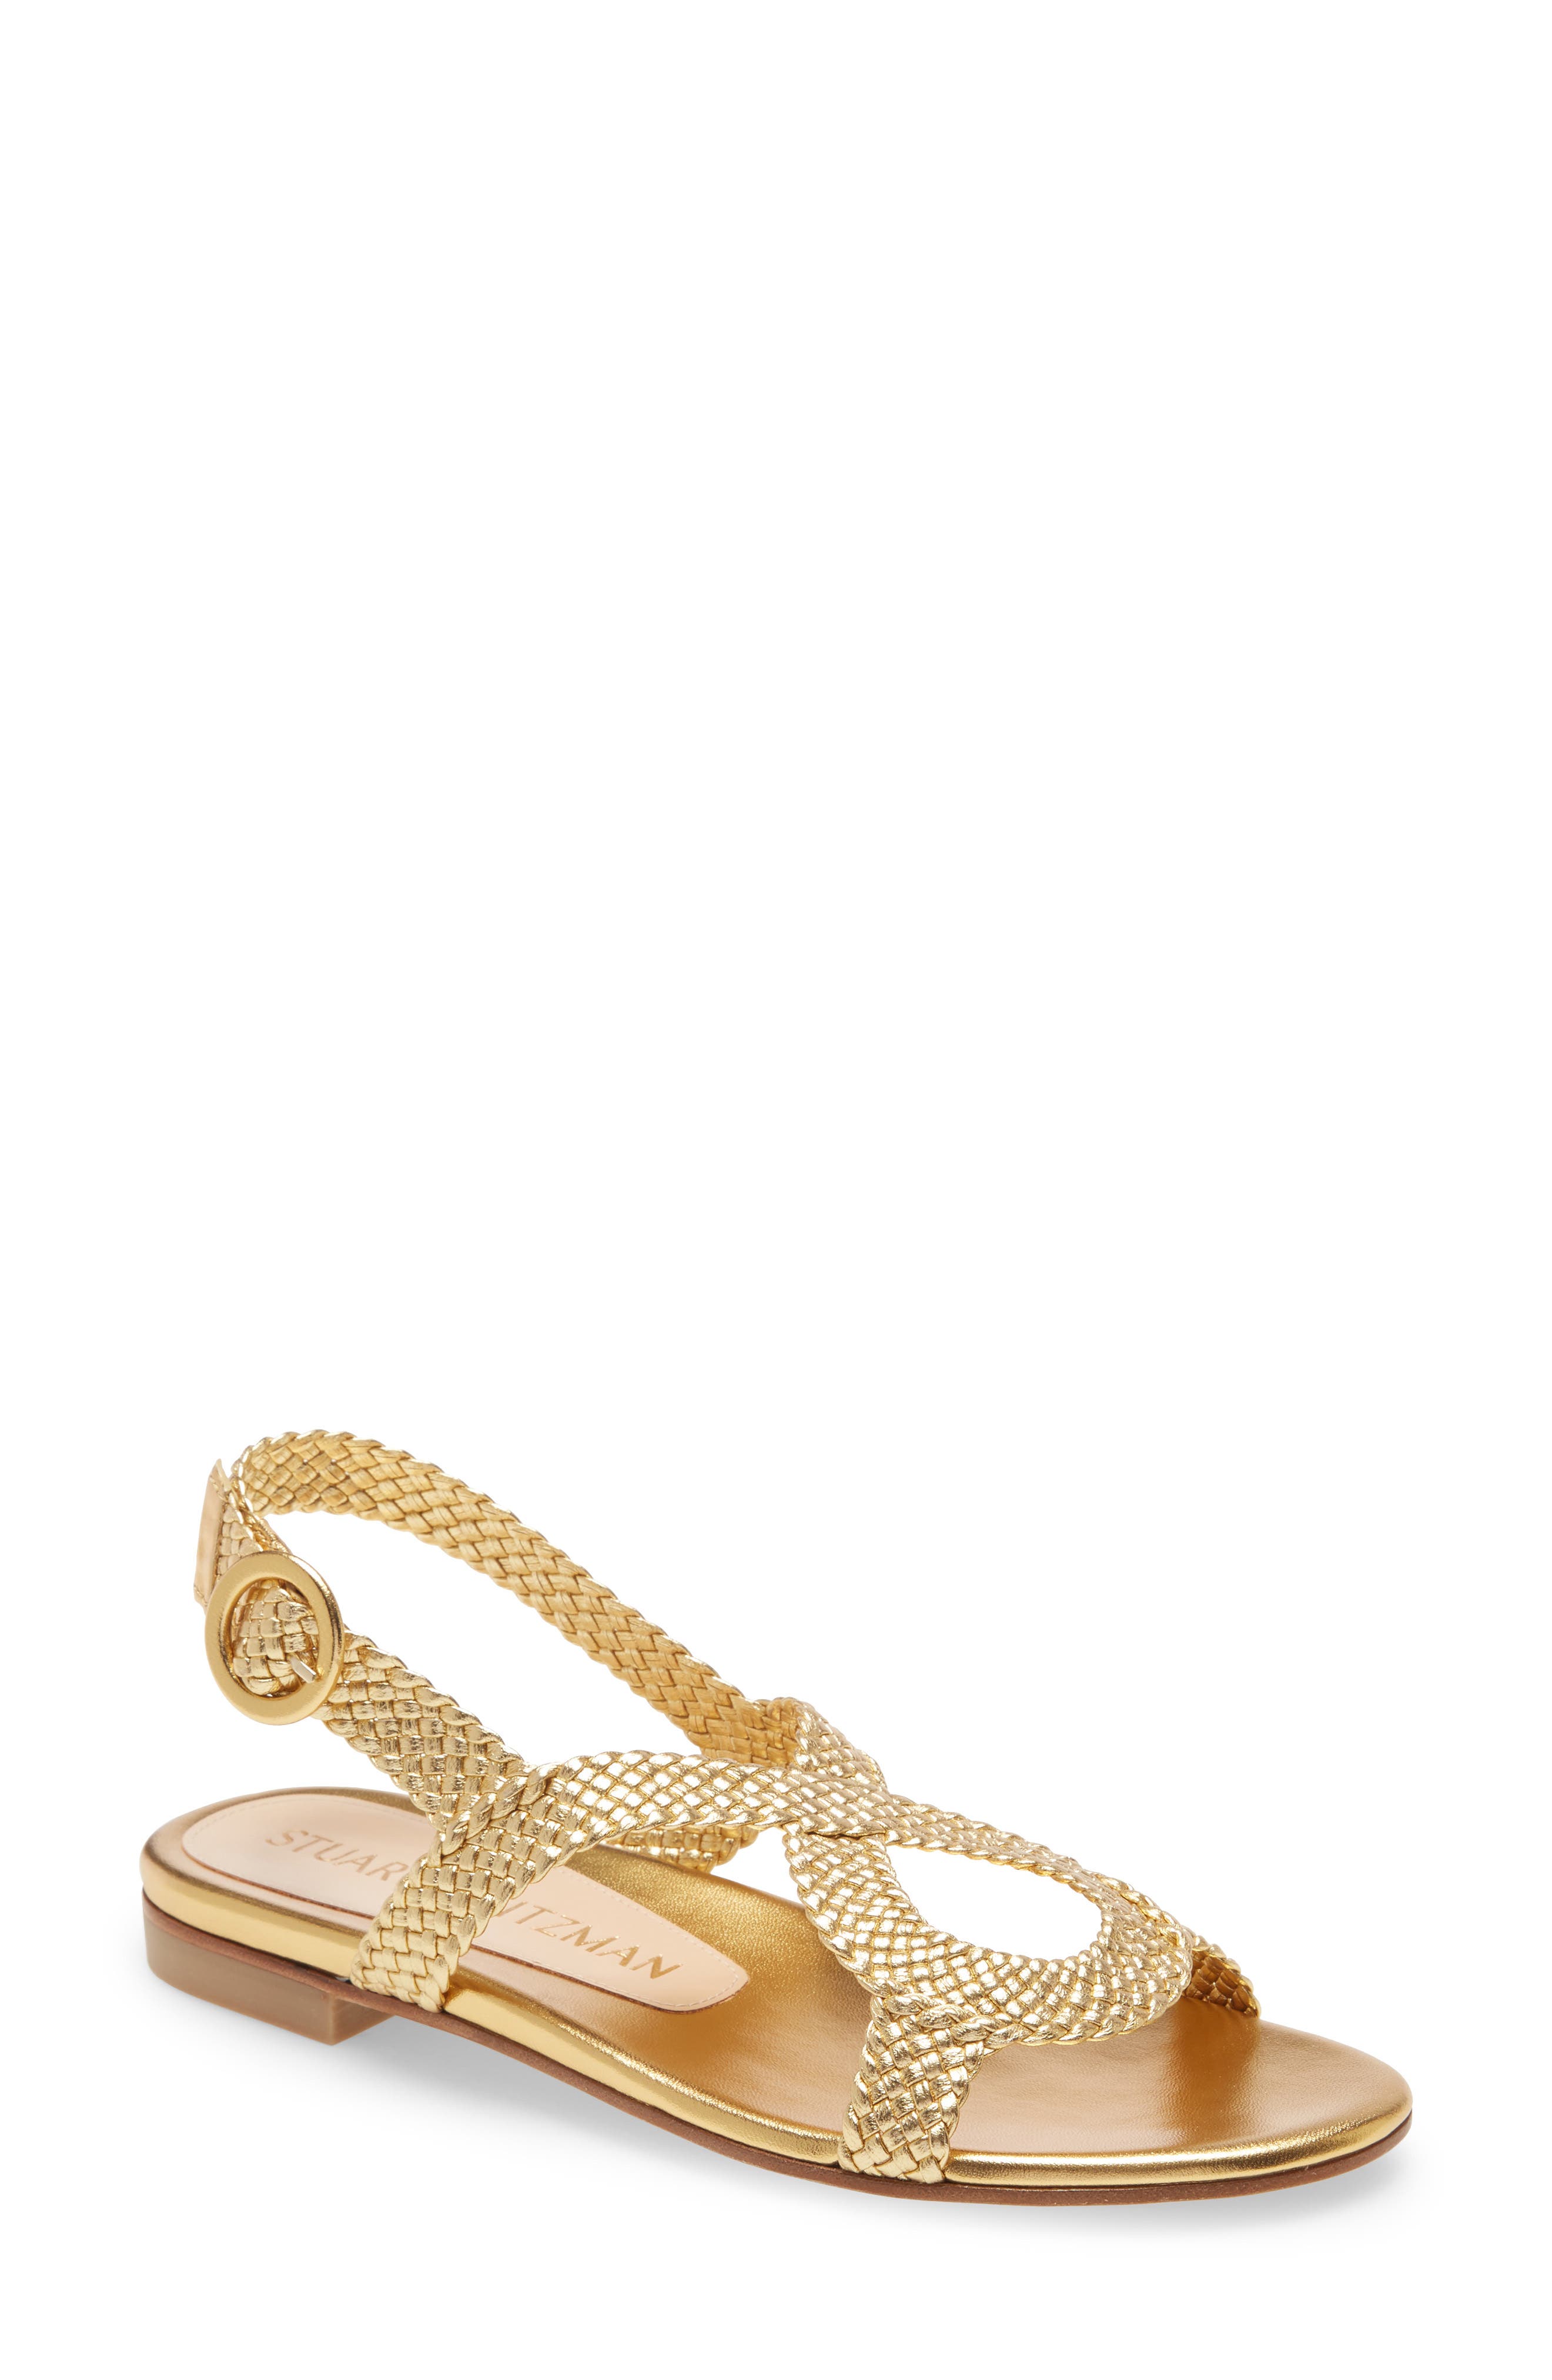 gold flat sandals nordstrom